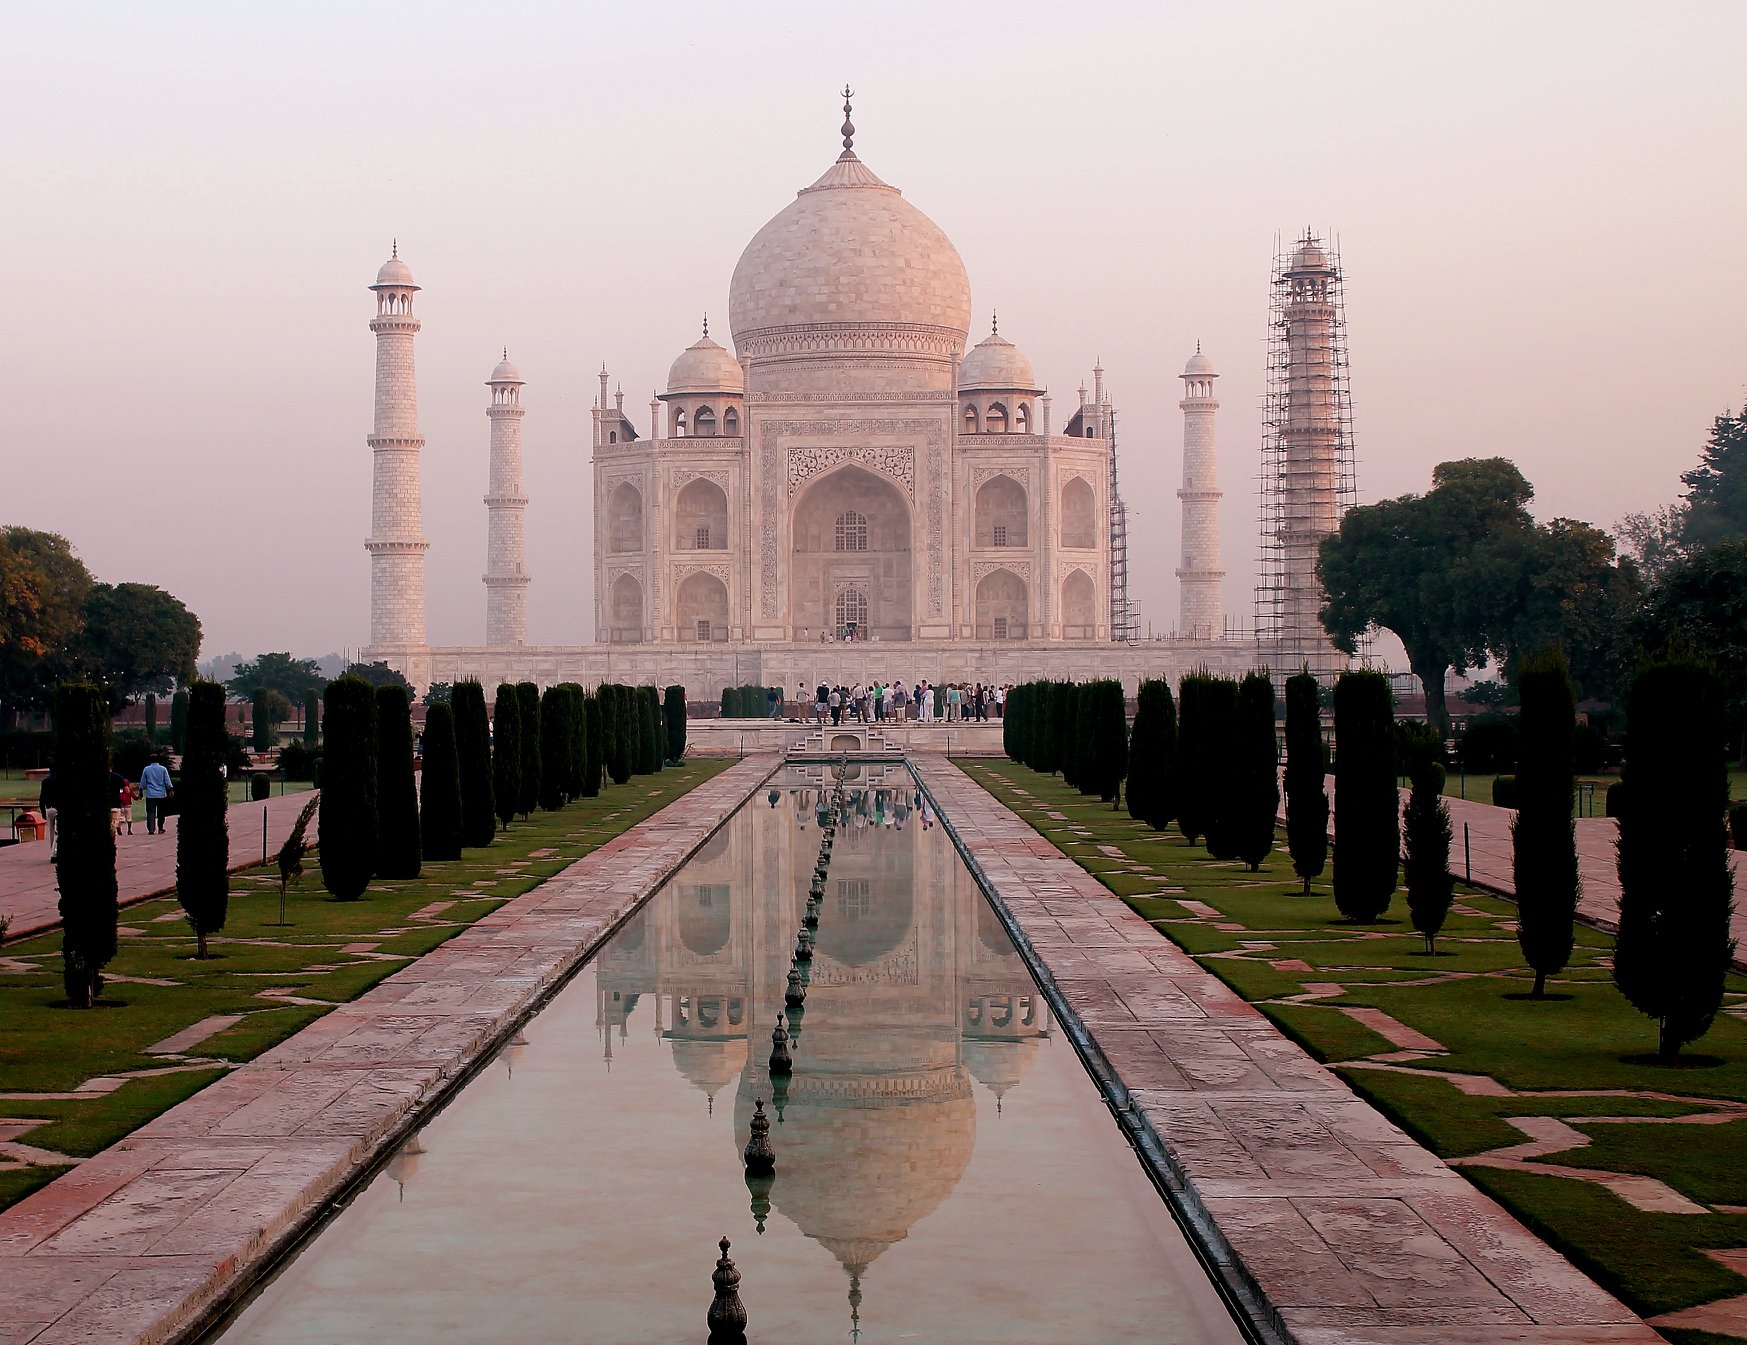 The Taj Mahal in all its magnificence. Source: Glenn Craig